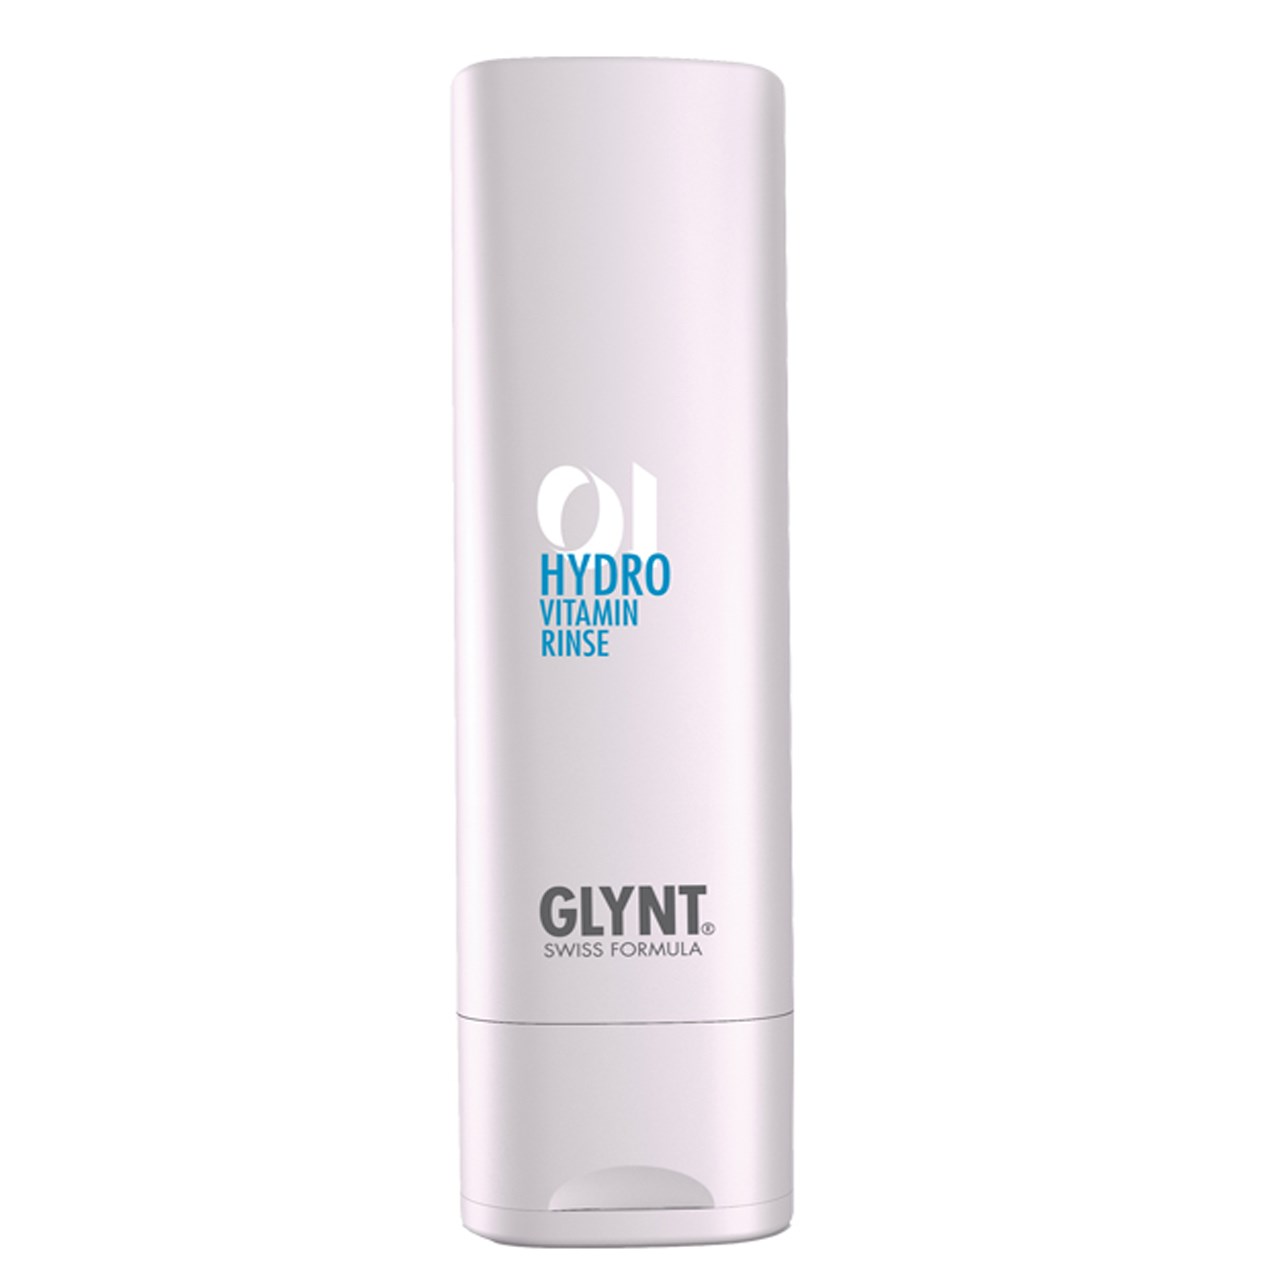 ماسک موی مرطوب کننده گلینت مدل Hydro Vitamin حجم 200 میلی لیتر